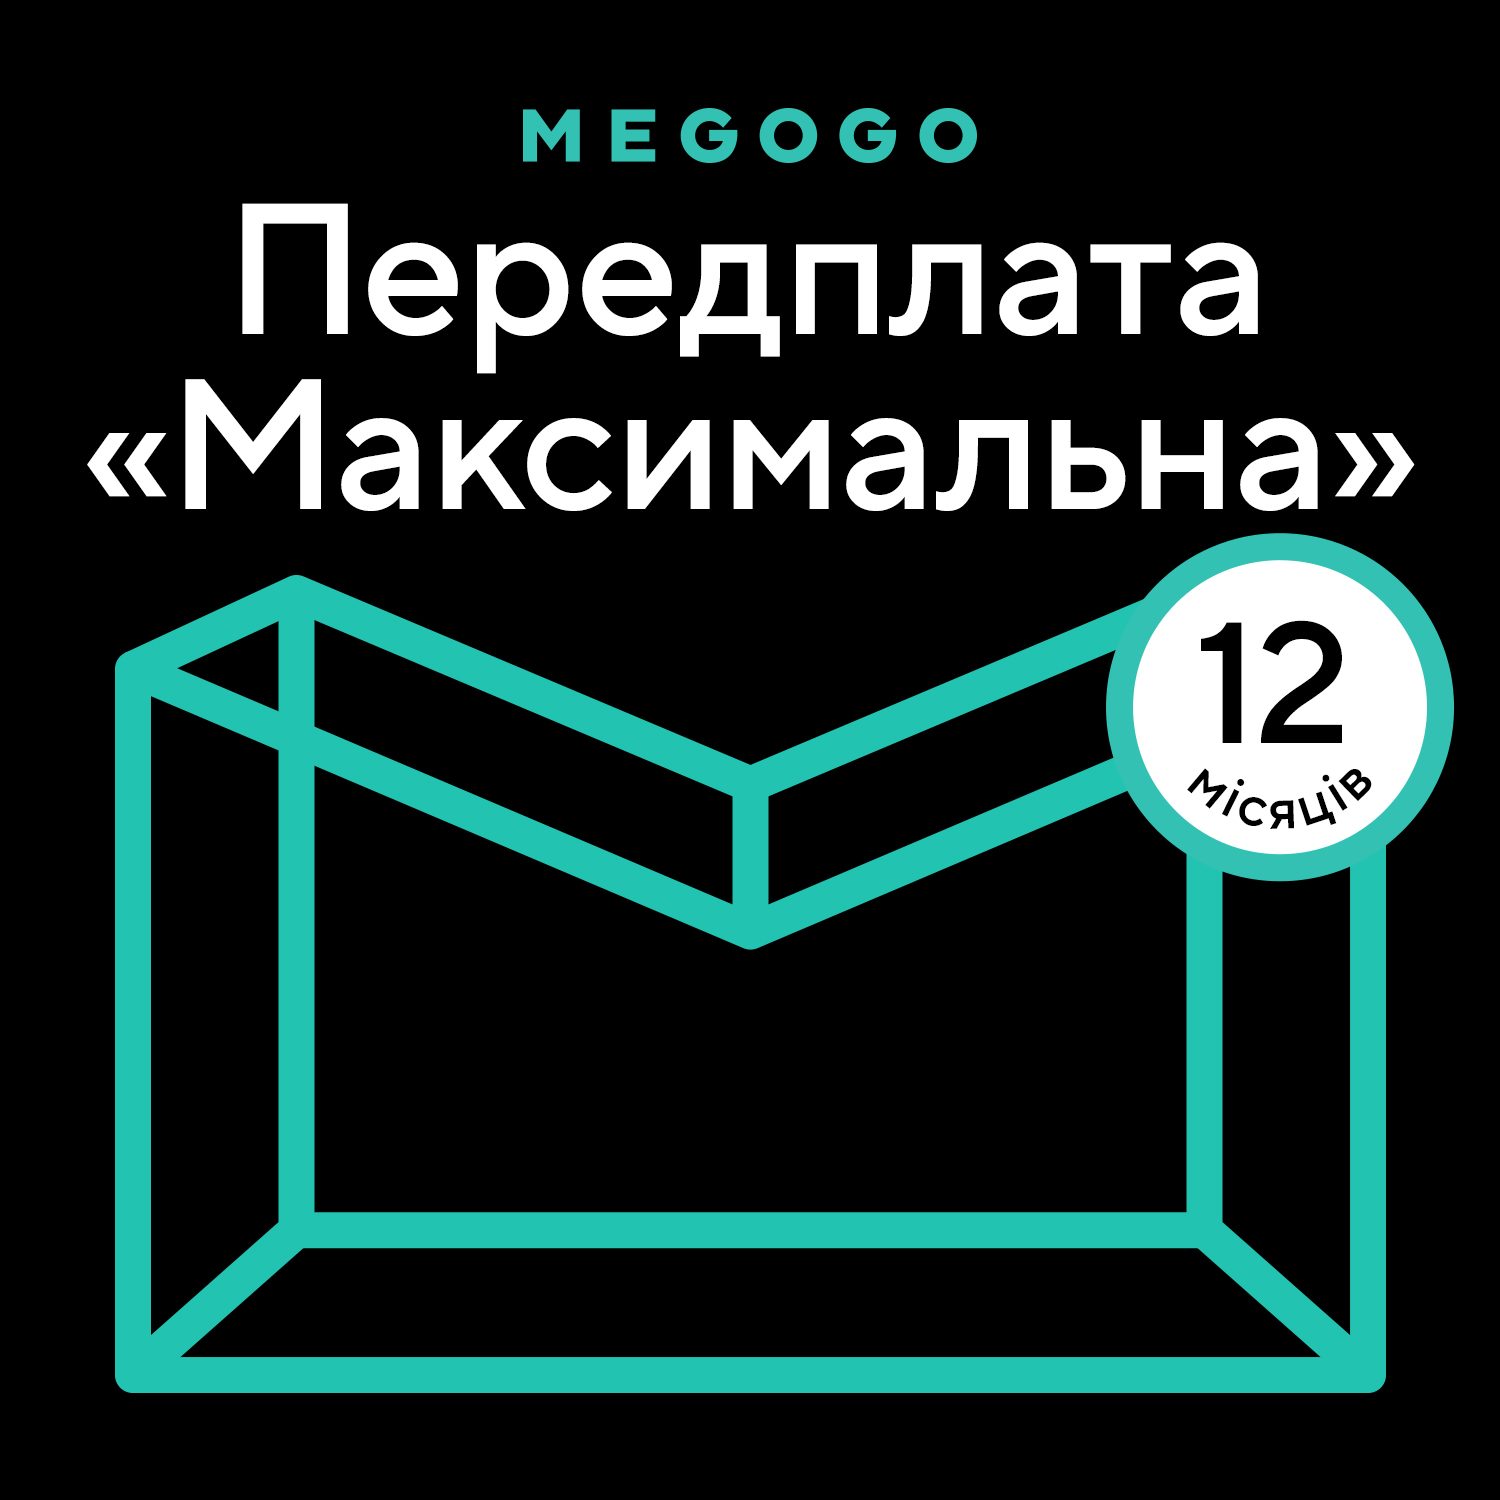 MEGOGO «Кино и ТВ: Максимальная» 12 мес в Киеве